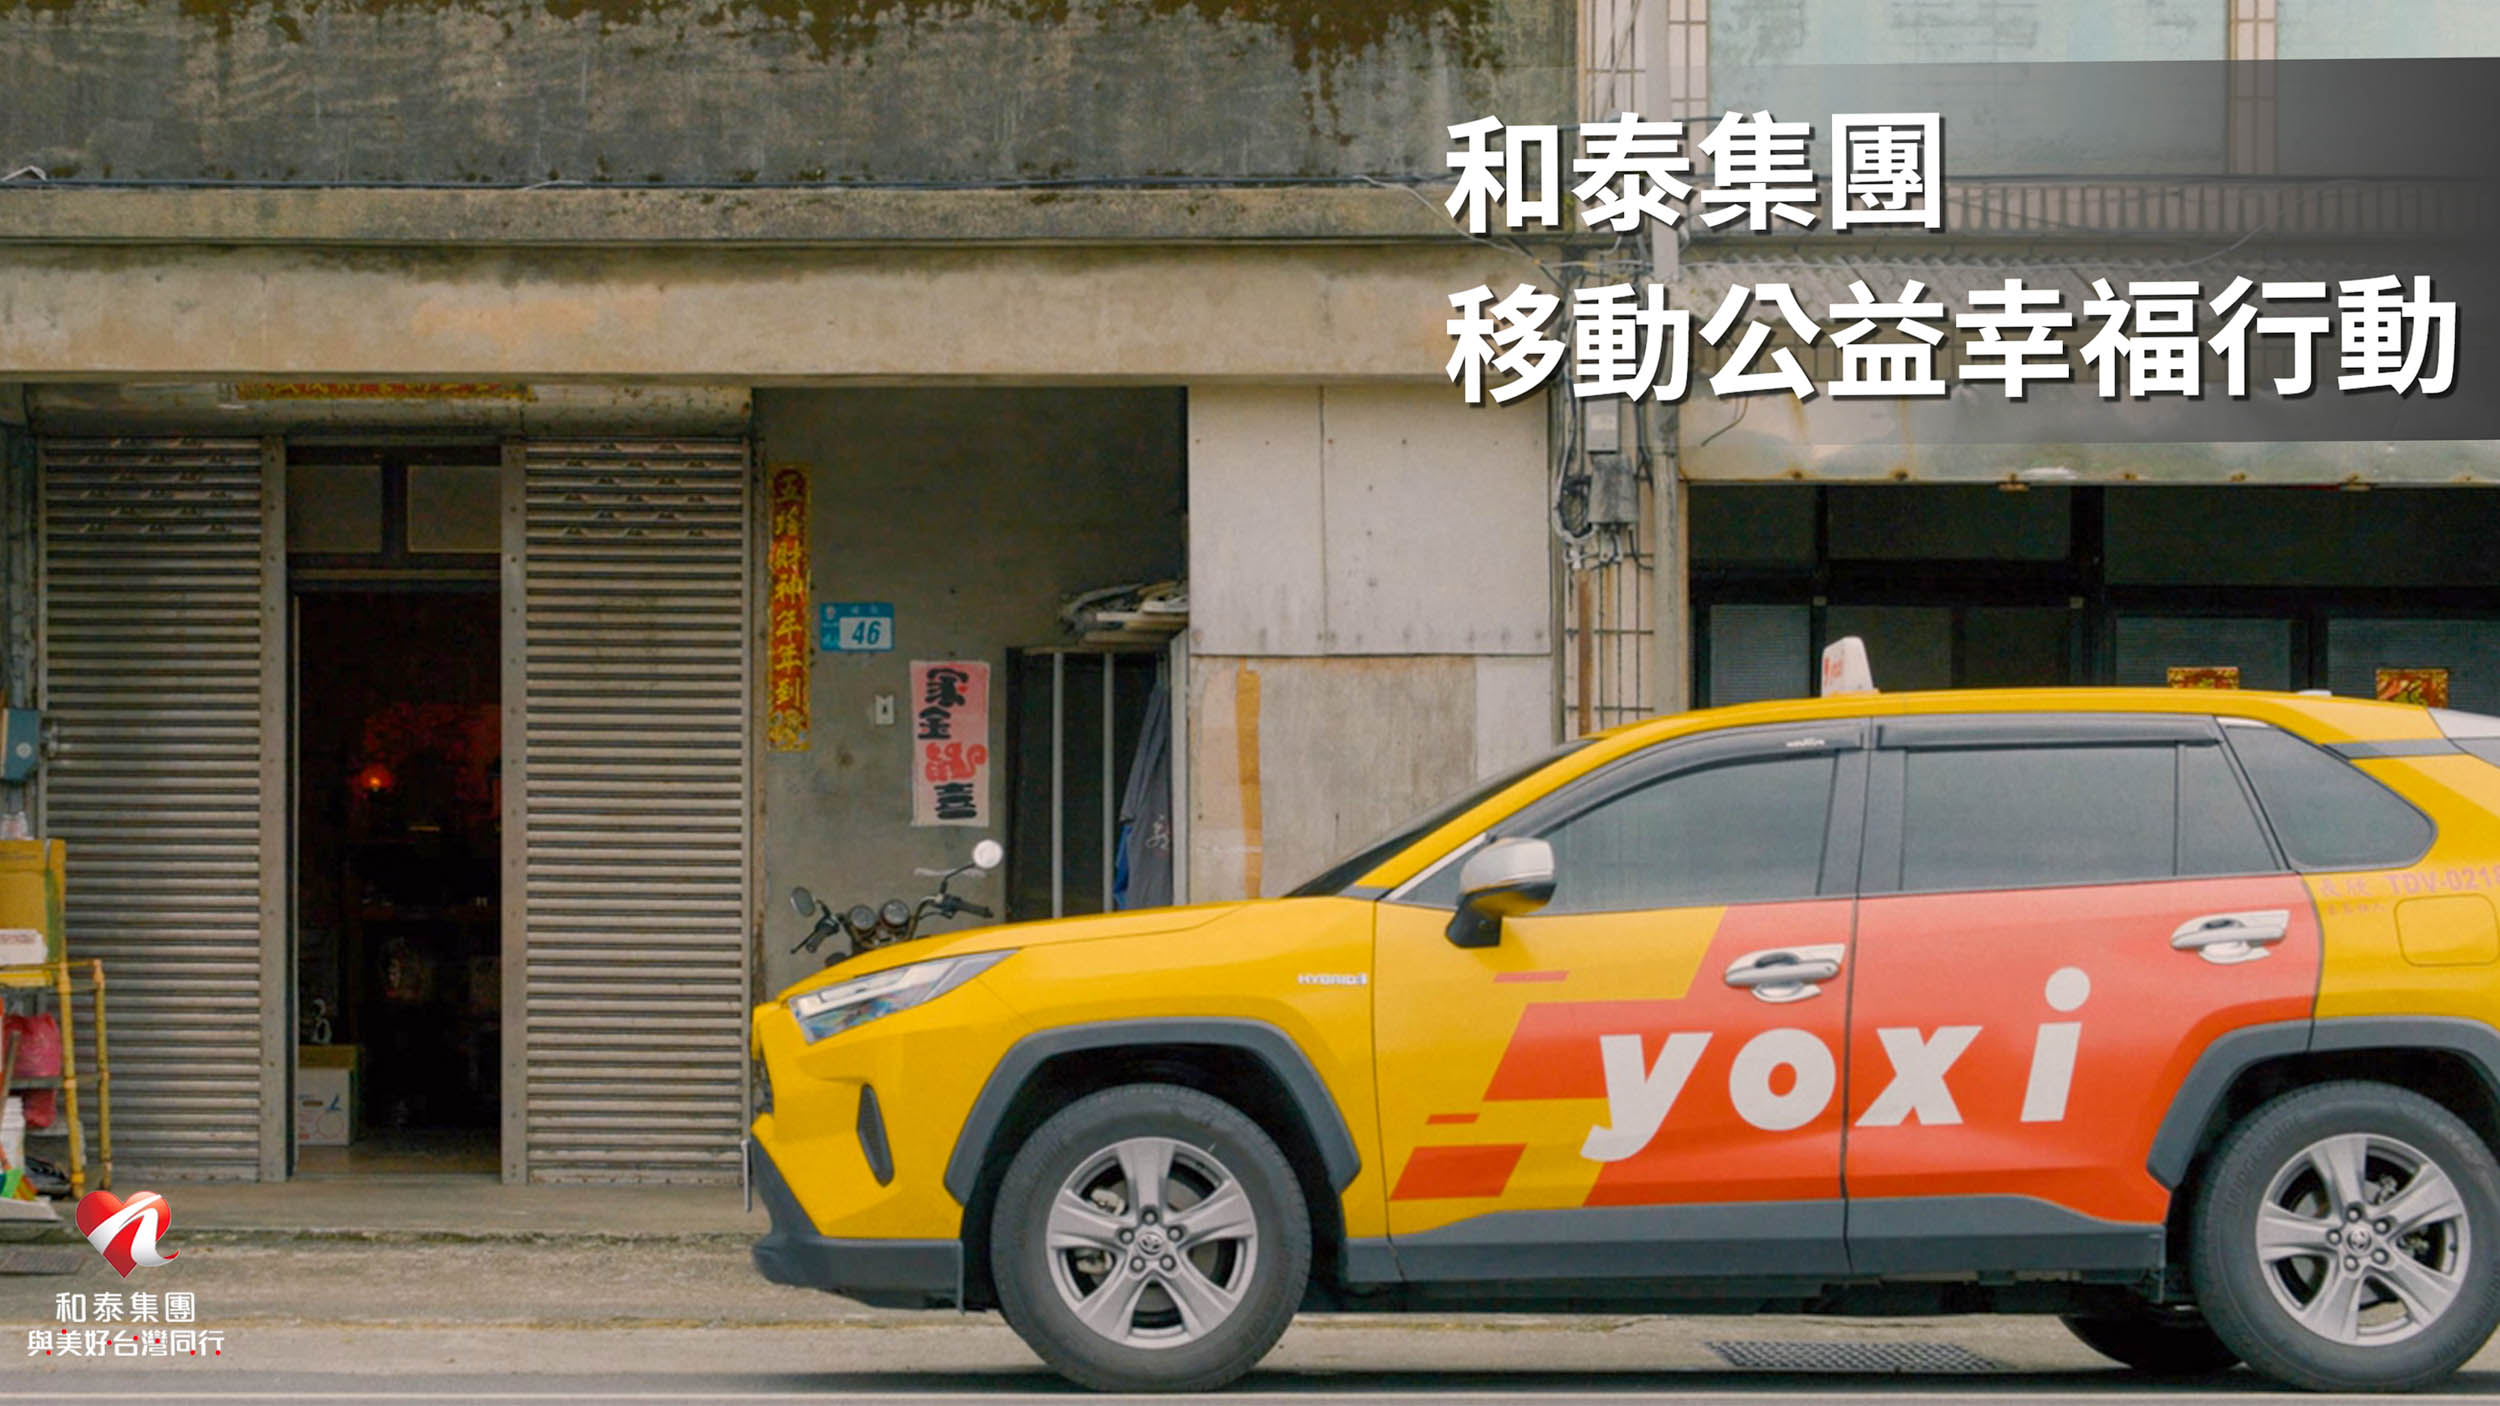 和泰集團 yoxi 擴大服務前進臺中，捐贈千趟弱勢兒少交通接送